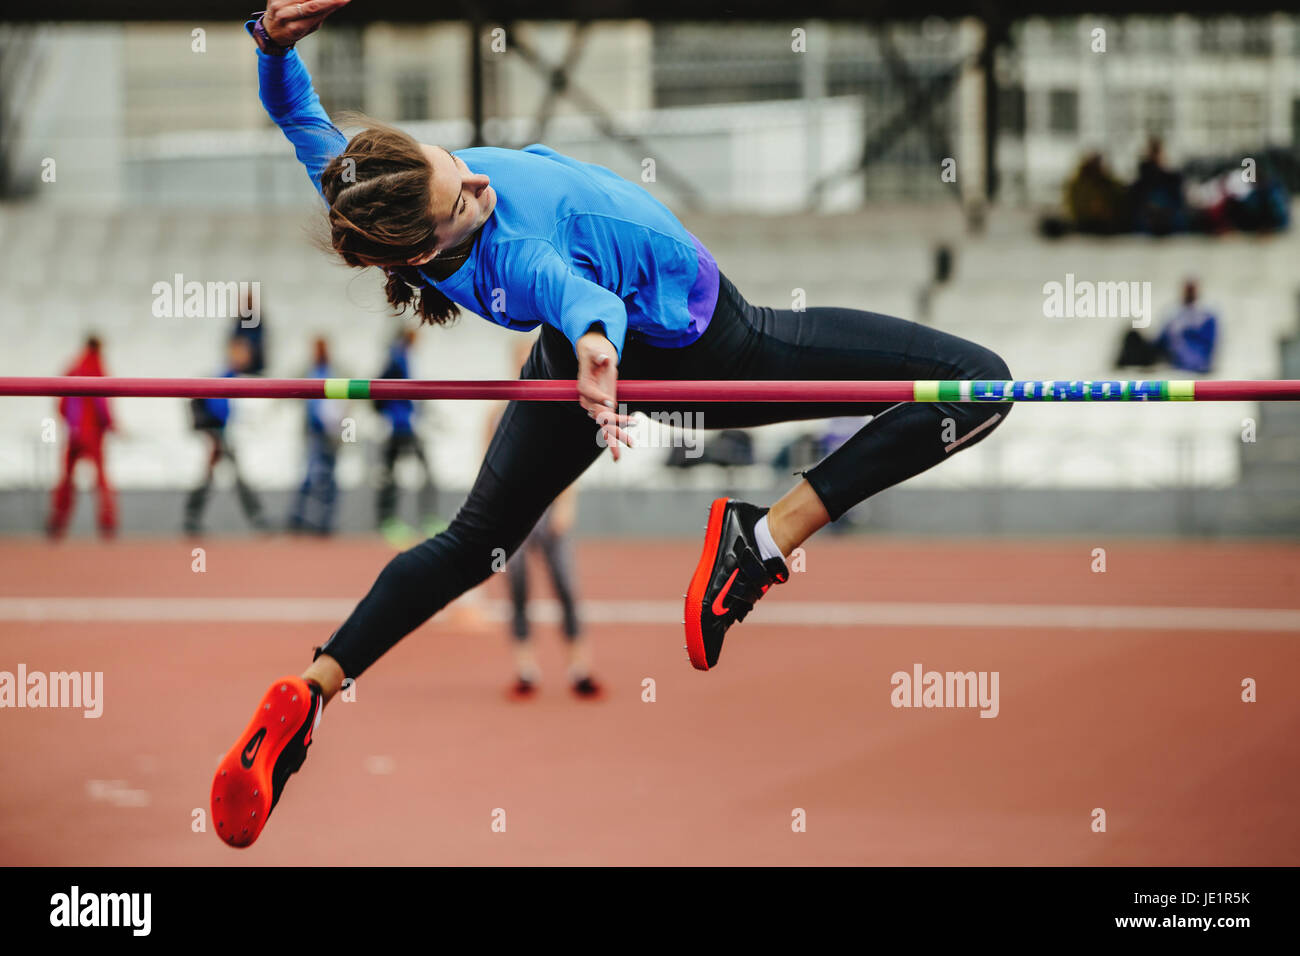 Atleta Femenina salto exitoso intento de salto de altura durante el campeonato UrFO en atletismo Foto de stock